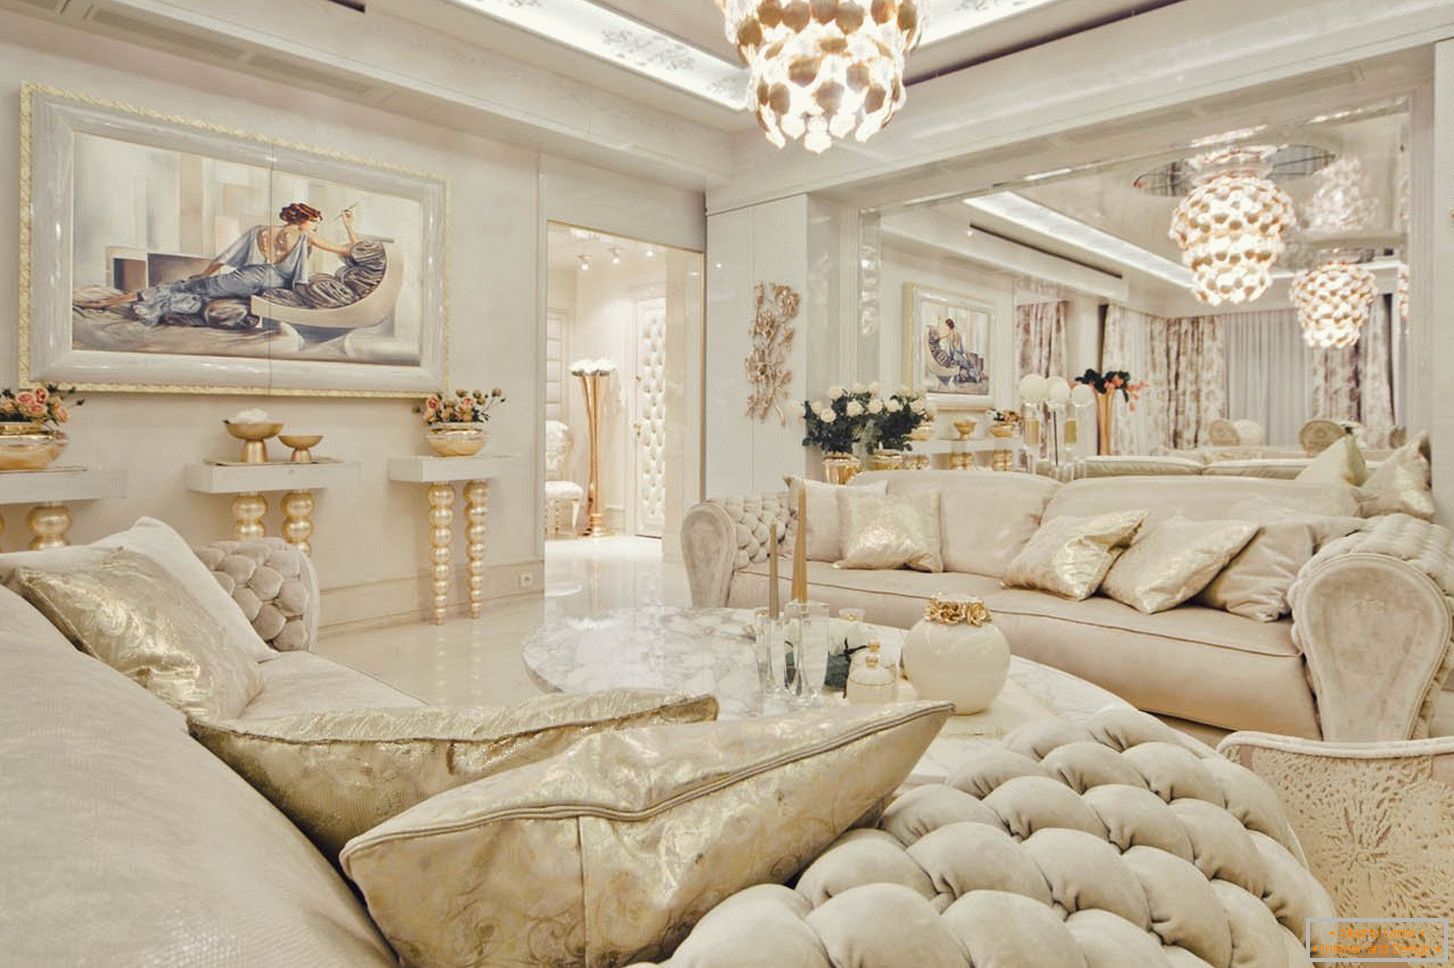 Interior in white color